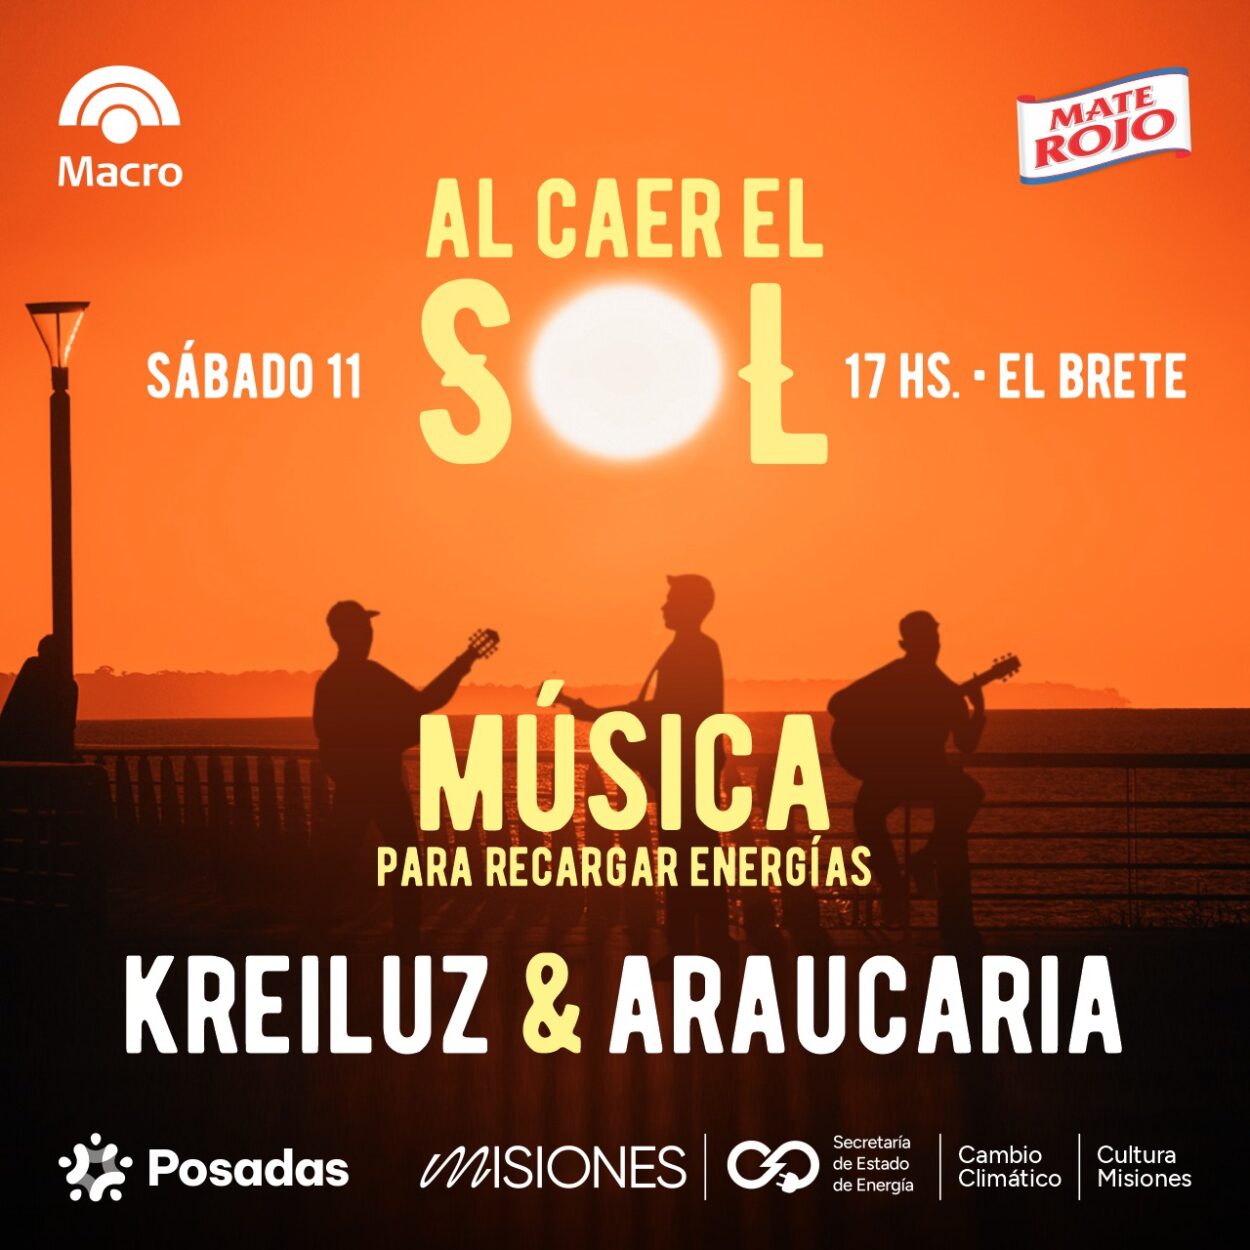 Araucaria y Kreiluz aportarán su energía musical este sábado en El Brete imagen-8